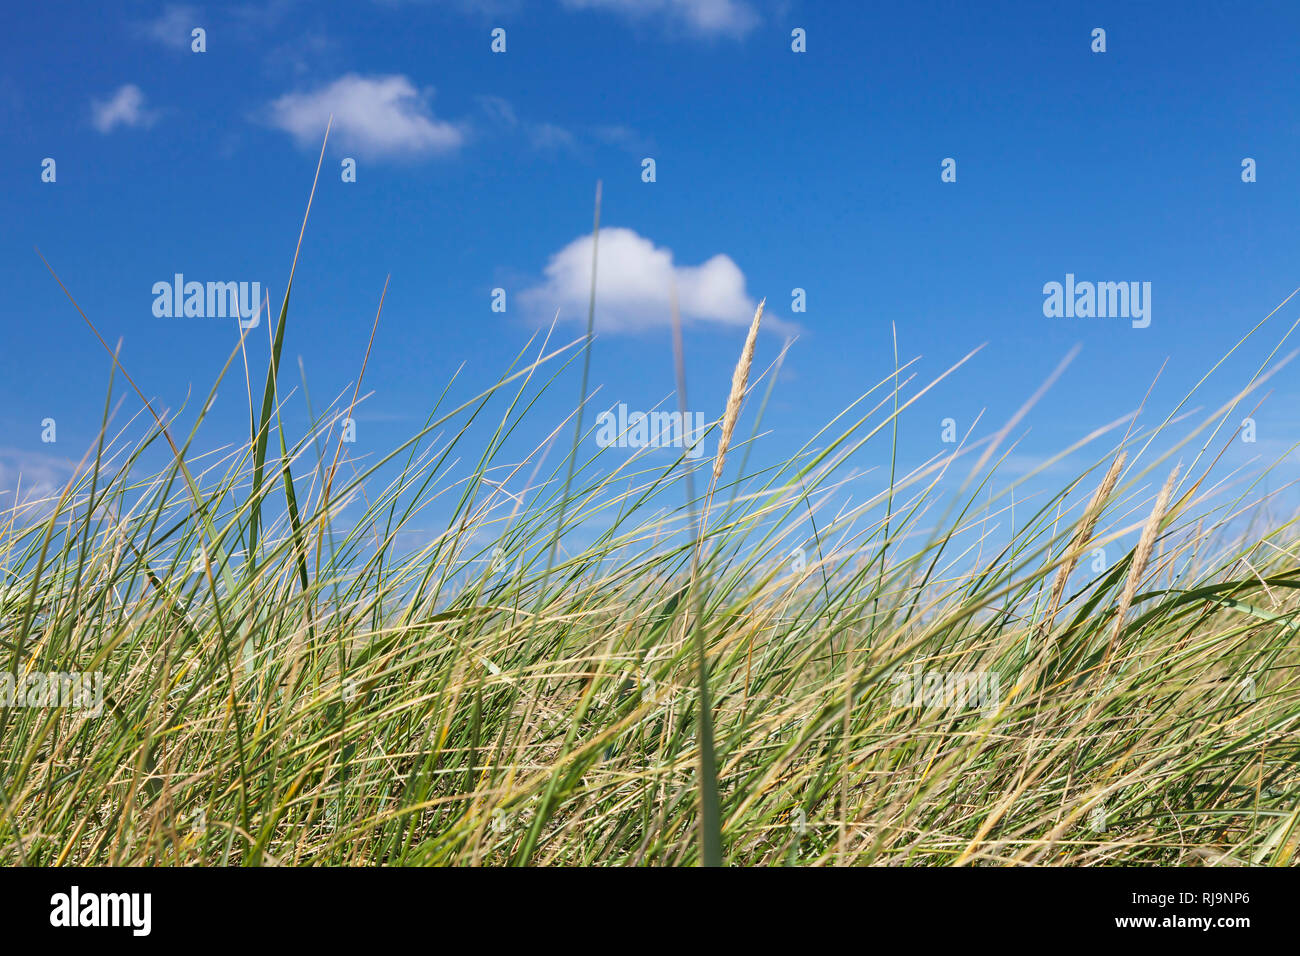 Strandhafer vor blauem Himmel, Sylt, Nordfriesland, Schleswig Holstein, Deutschland Stock Photo